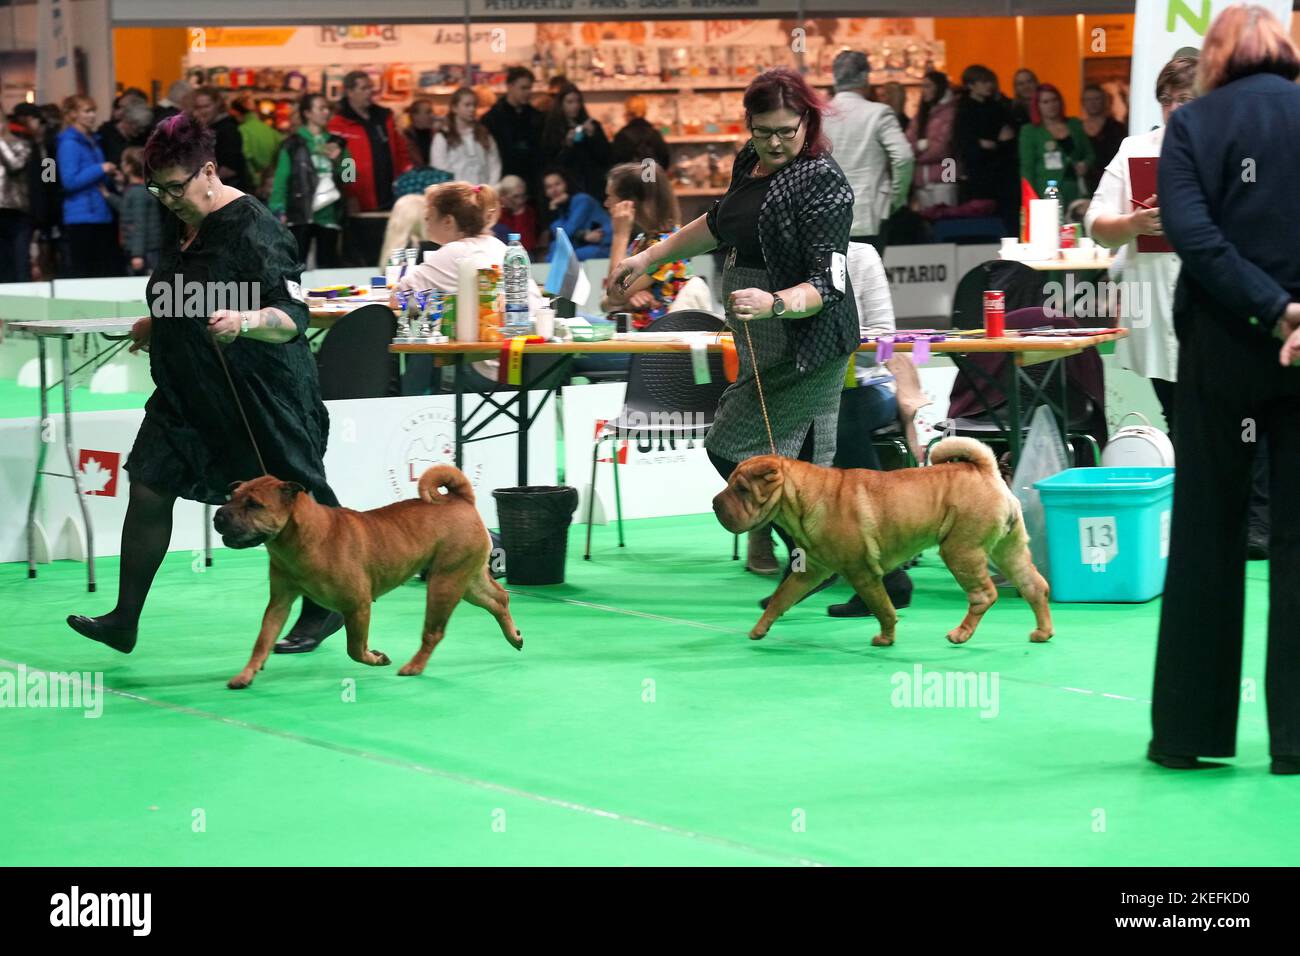 Les femmes courent avec leurs chiens Shar Pei pendant la foire internationale de l'industrie des animaux de compagnie Expo Zoo 2022 à Riga, Lettonie 12 novembre 2022. REUTERS/Ints Kalnins Banque D'Images